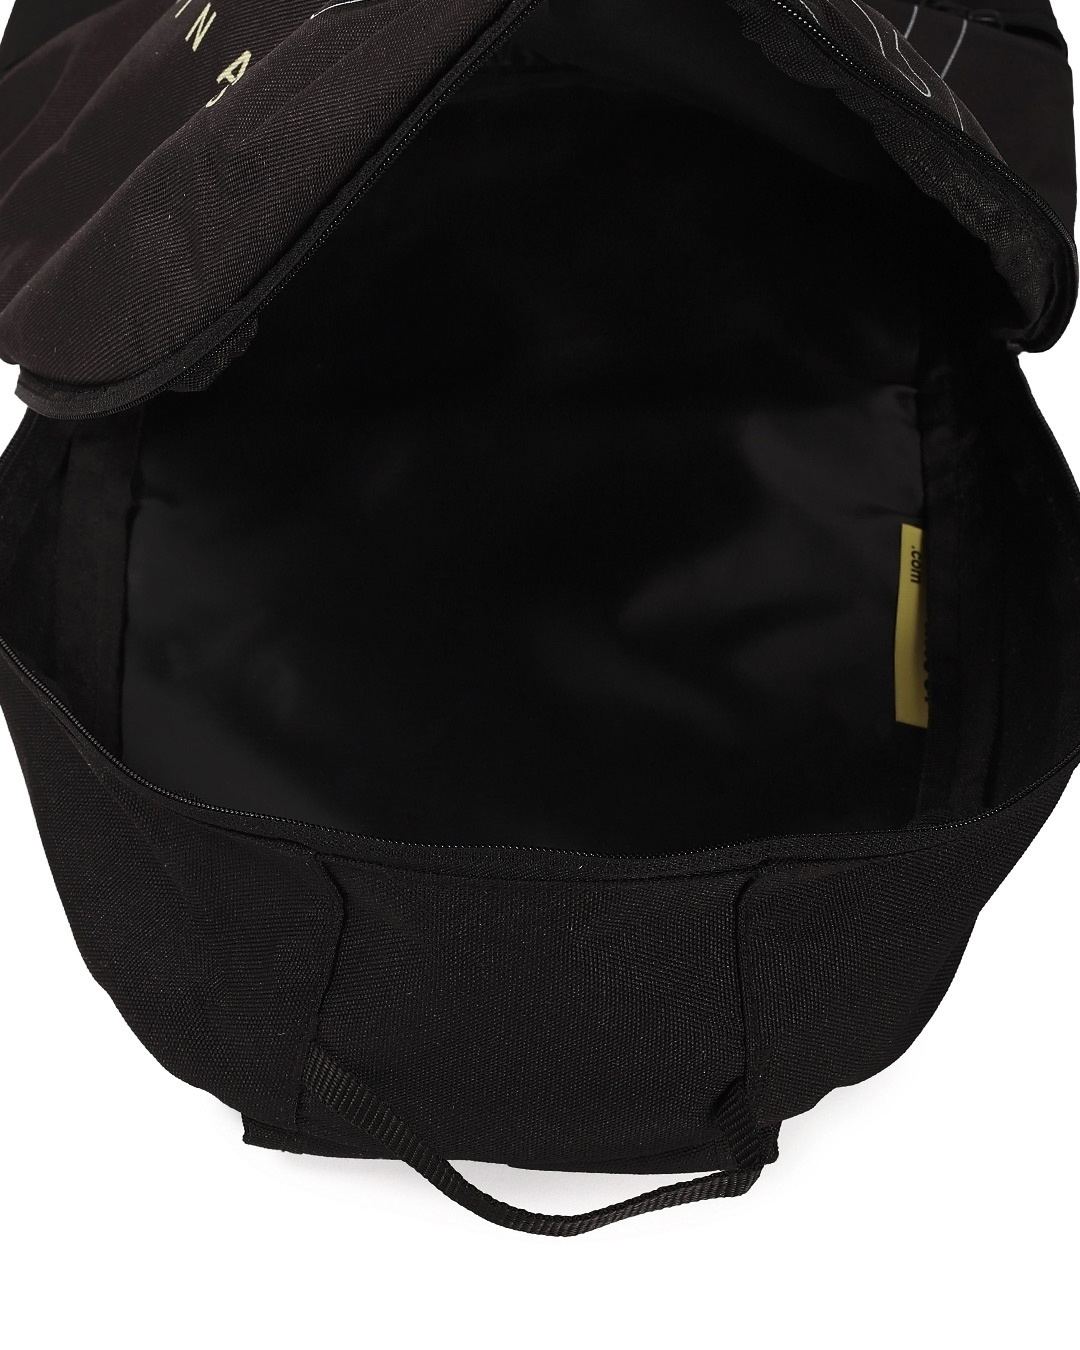 Shop Orginal Printed Small Backpack